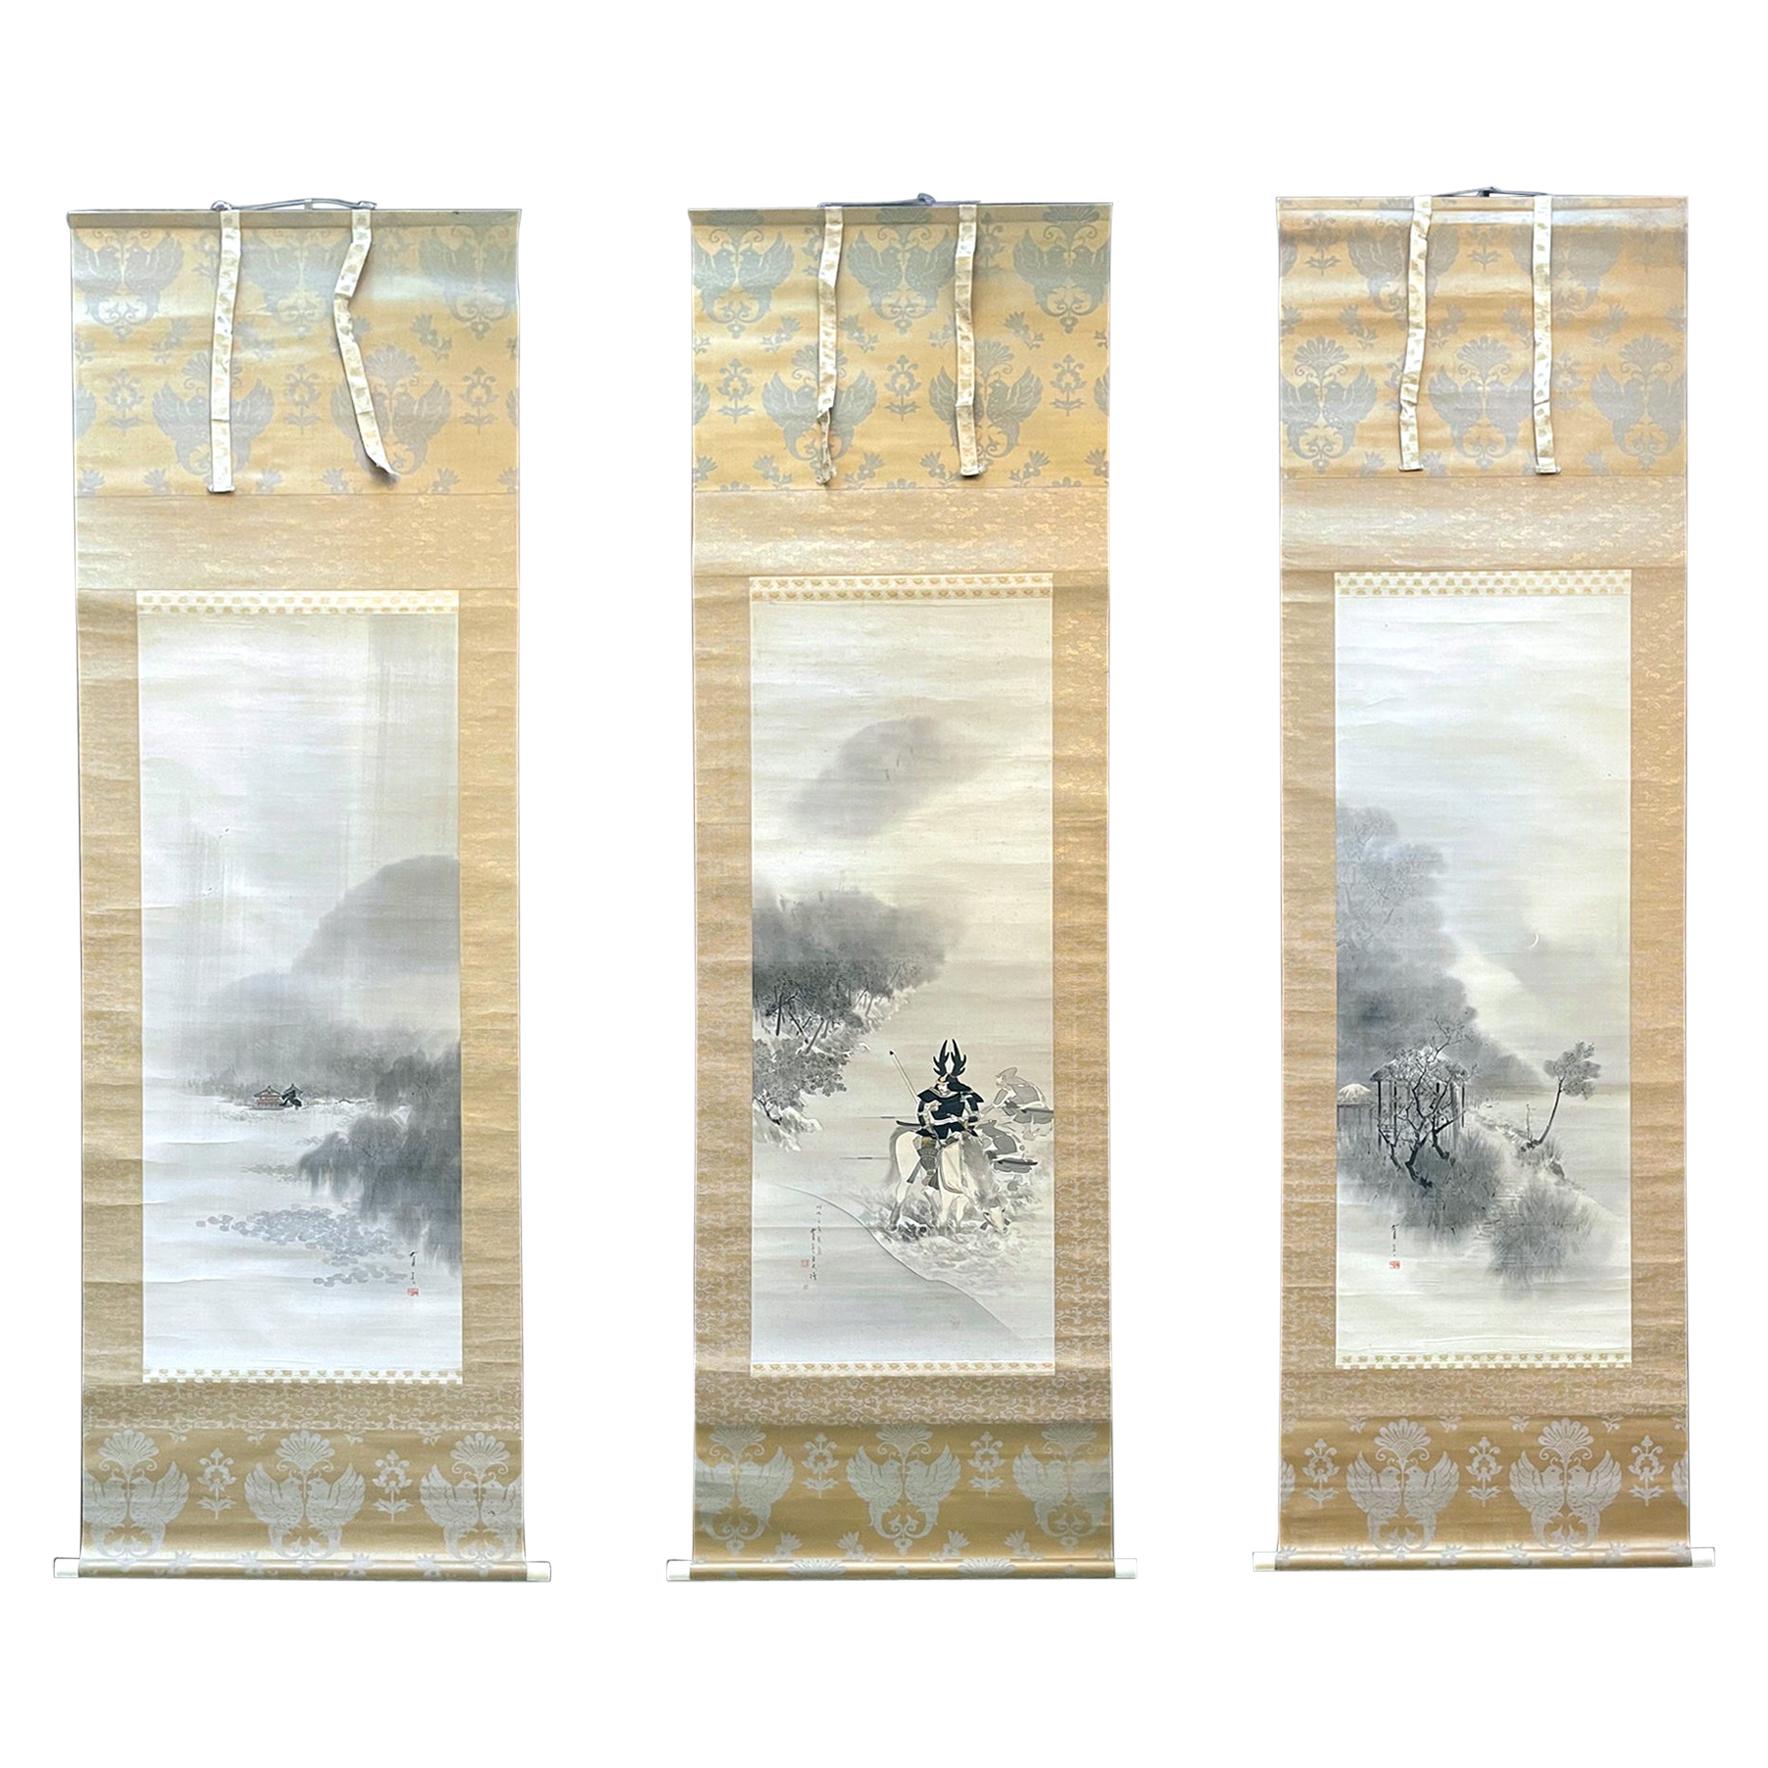 Seltenes Triptychon-Schnörkelgemälde von Watanabe Seitei aus der Meiji-Periode